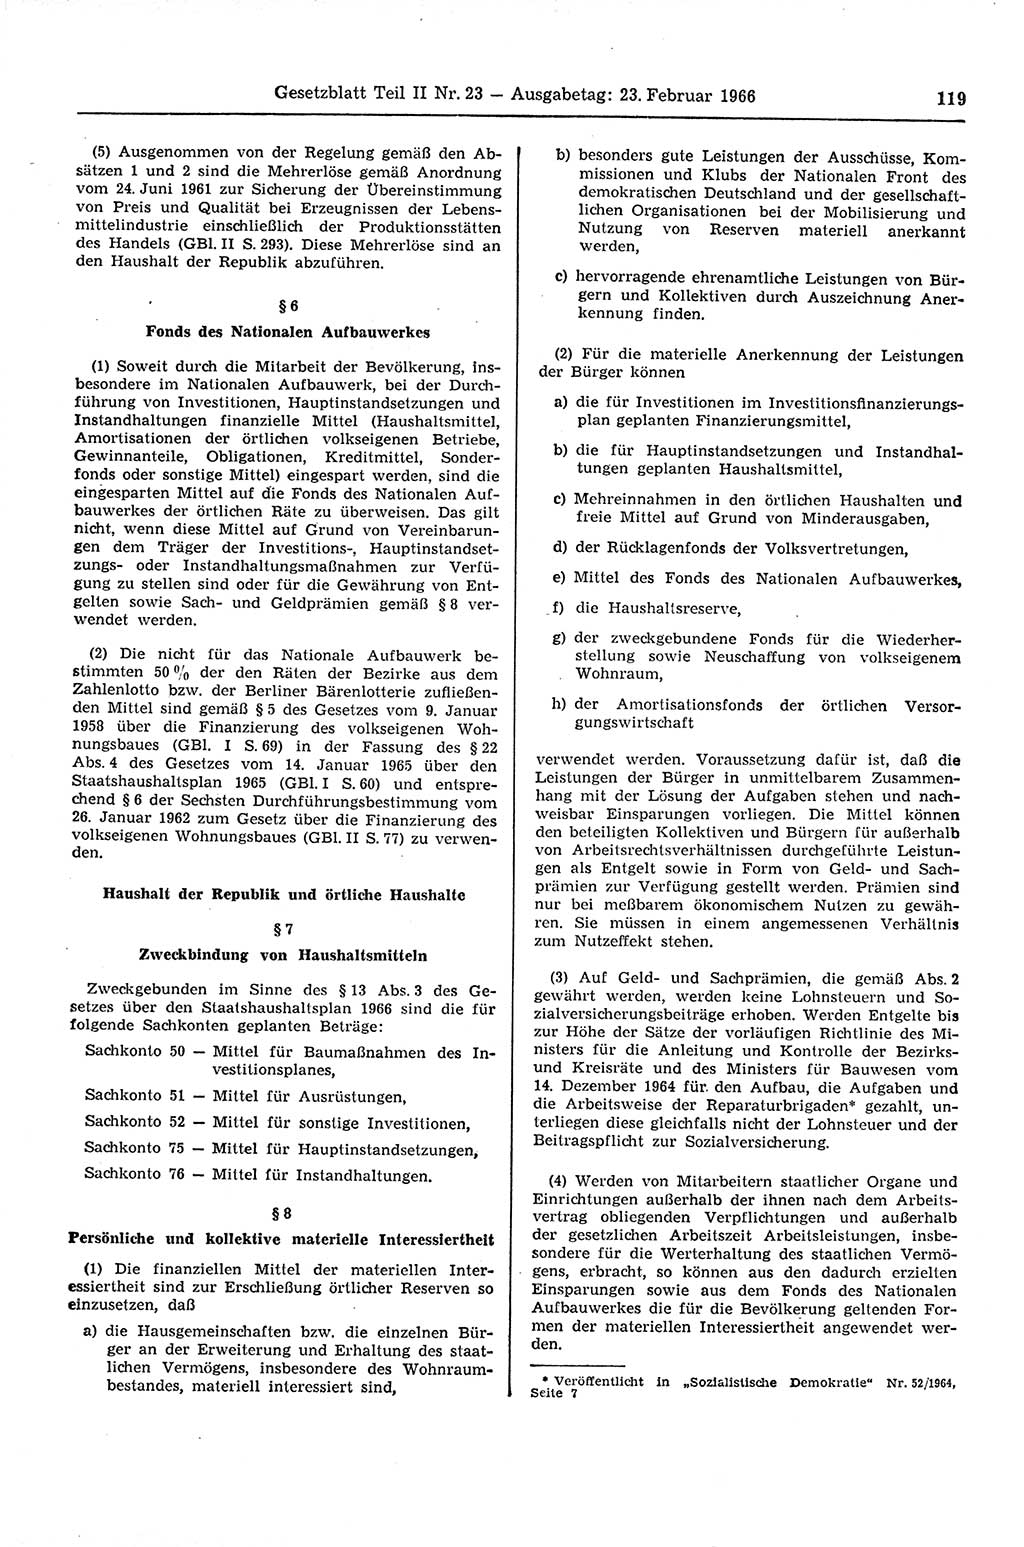 Gesetzblatt (GBl.) der Deutschen Demokratischen Republik (DDR) Teil ⅠⅠ 1966, Seite 119 (GBl. DDR ⅠⅠ 1966, S. 119)